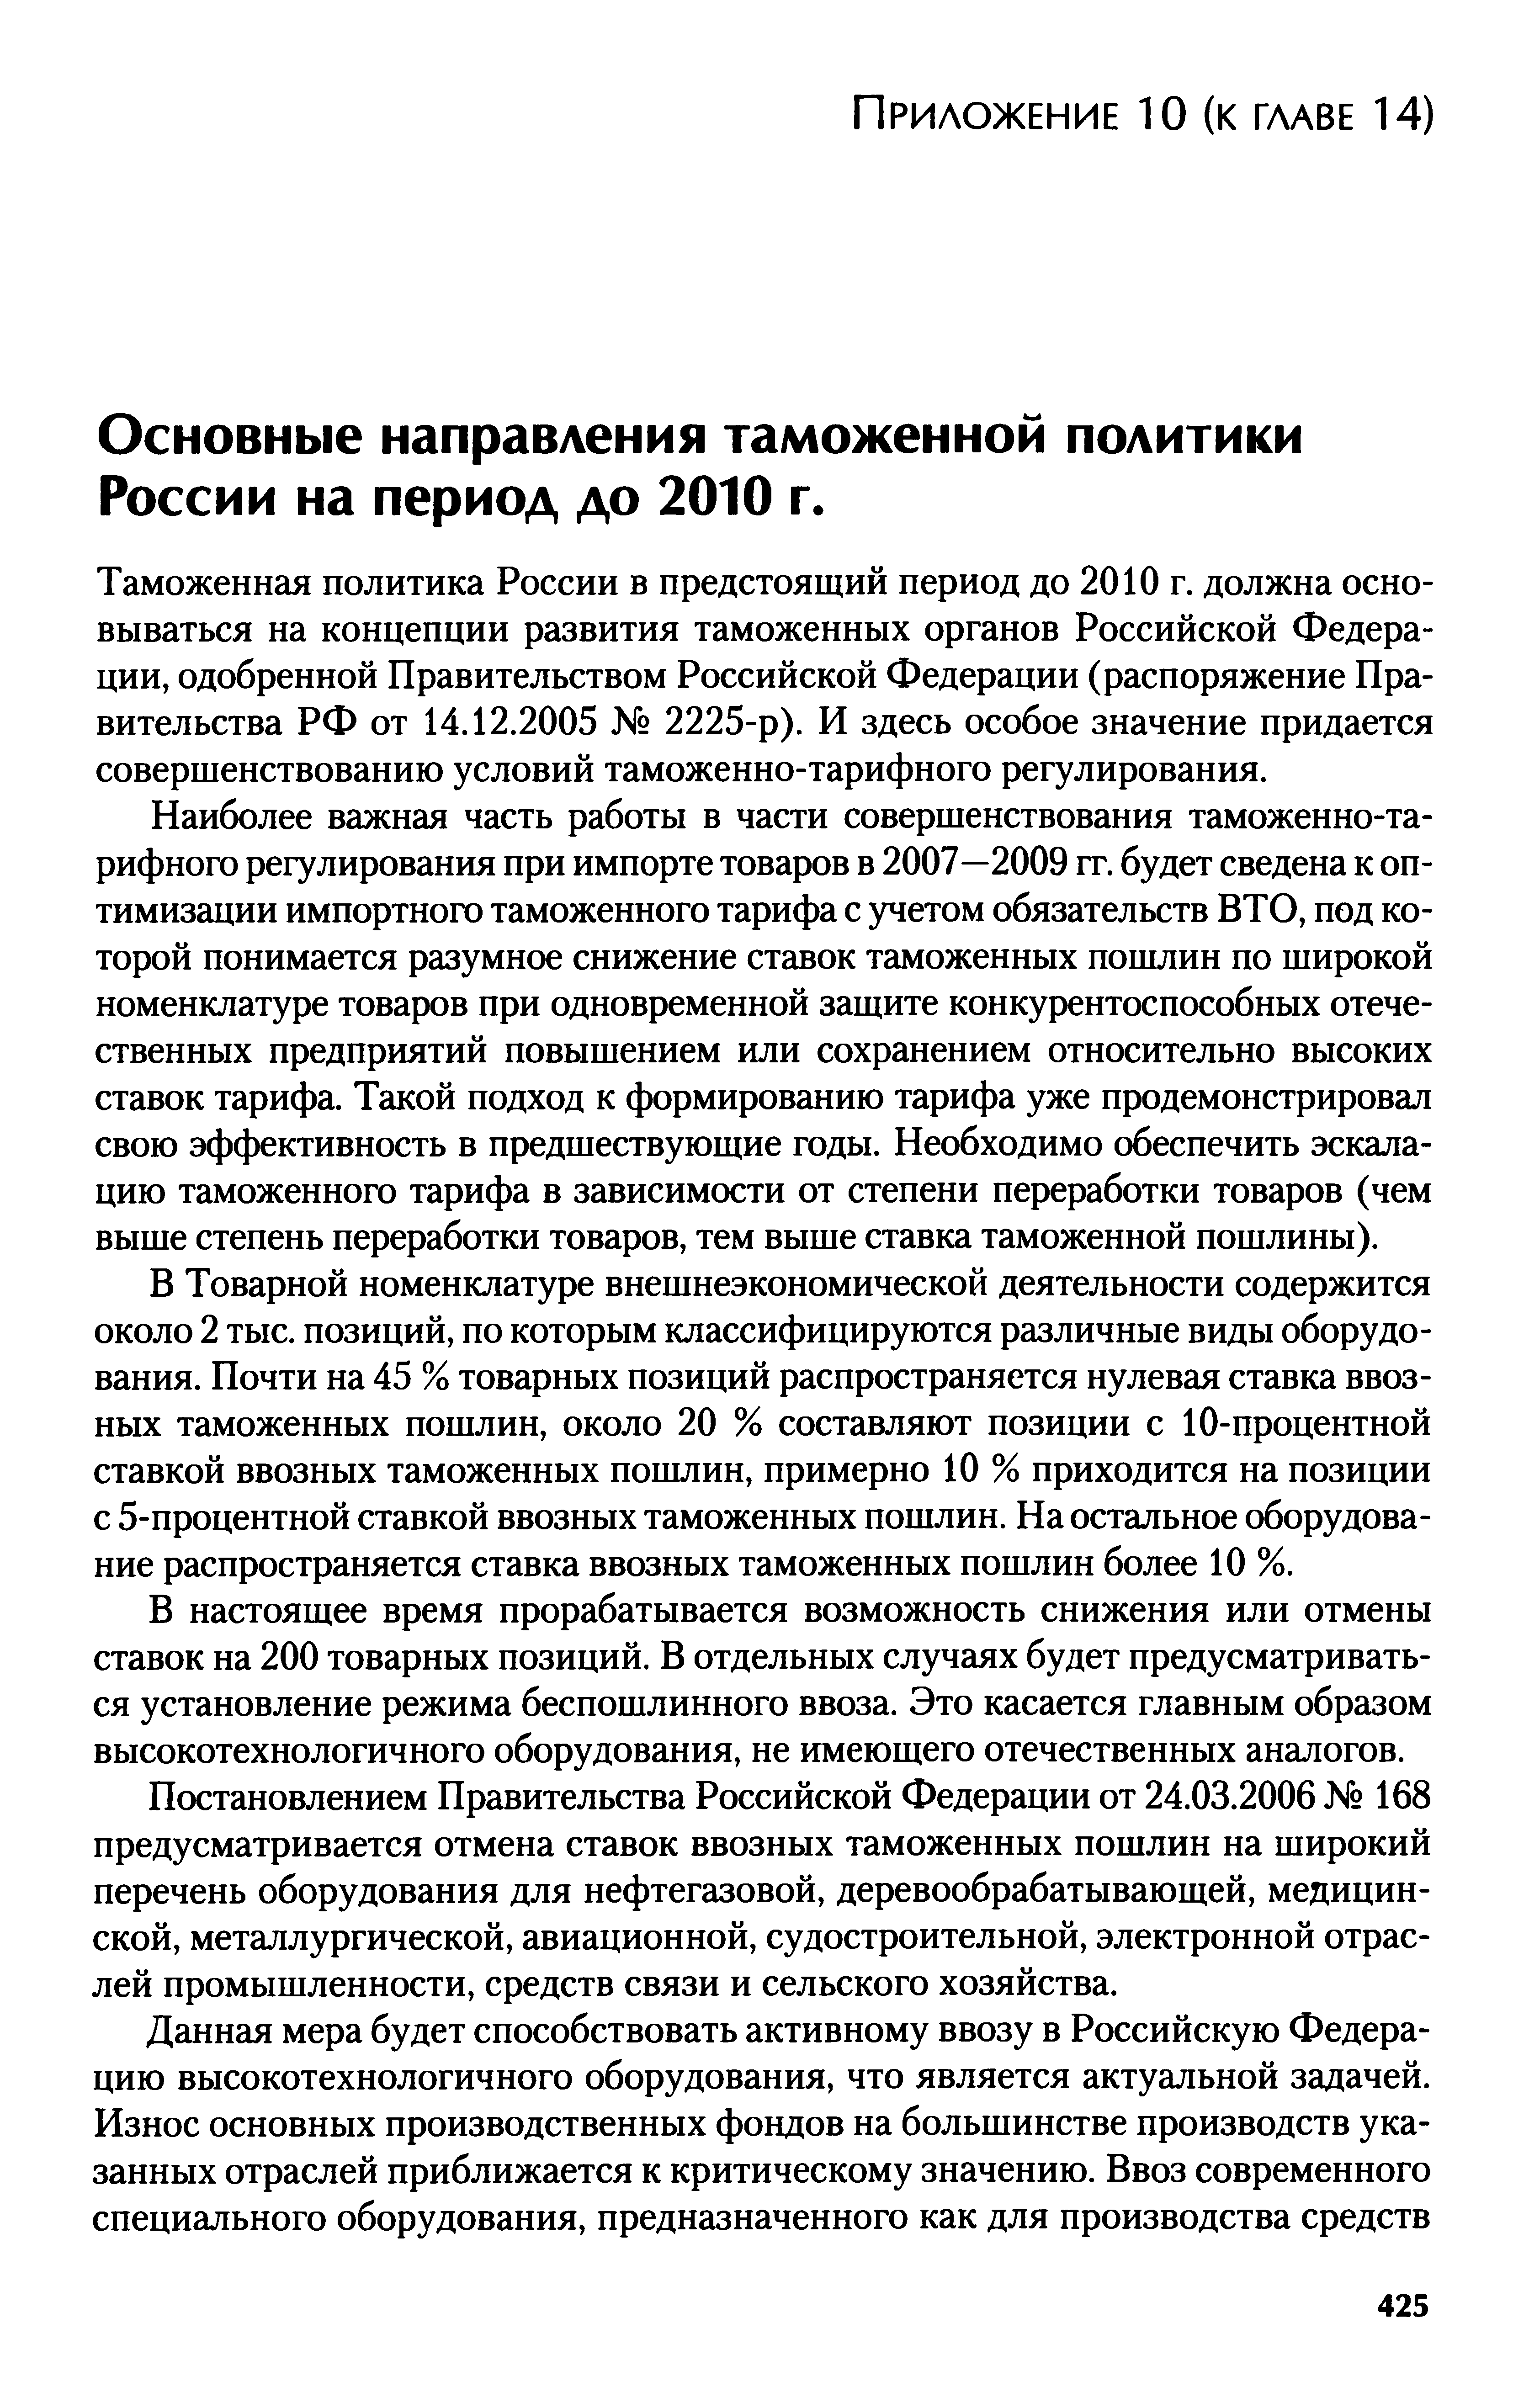 Основные направления таможенной политики России на период до 2010 г.
